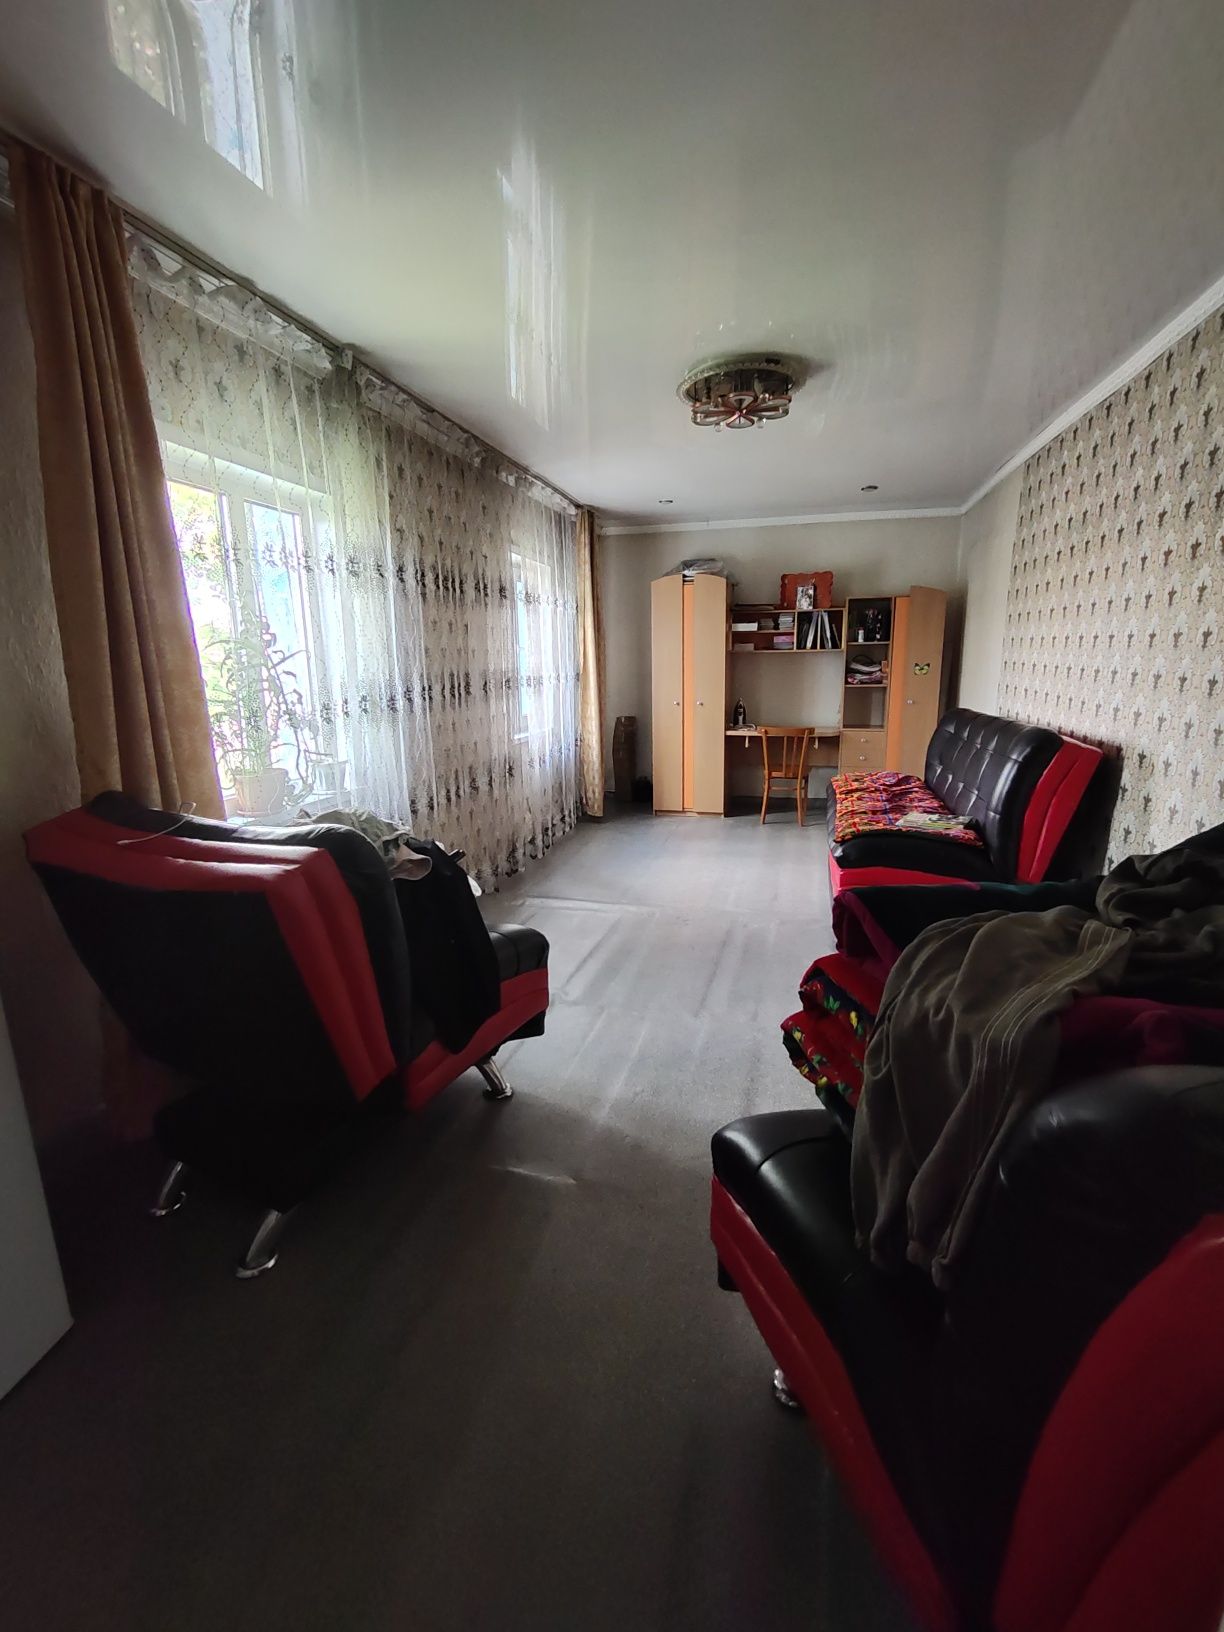 Продам дом в селе Ильичевка 70 км от г.Кокшетау